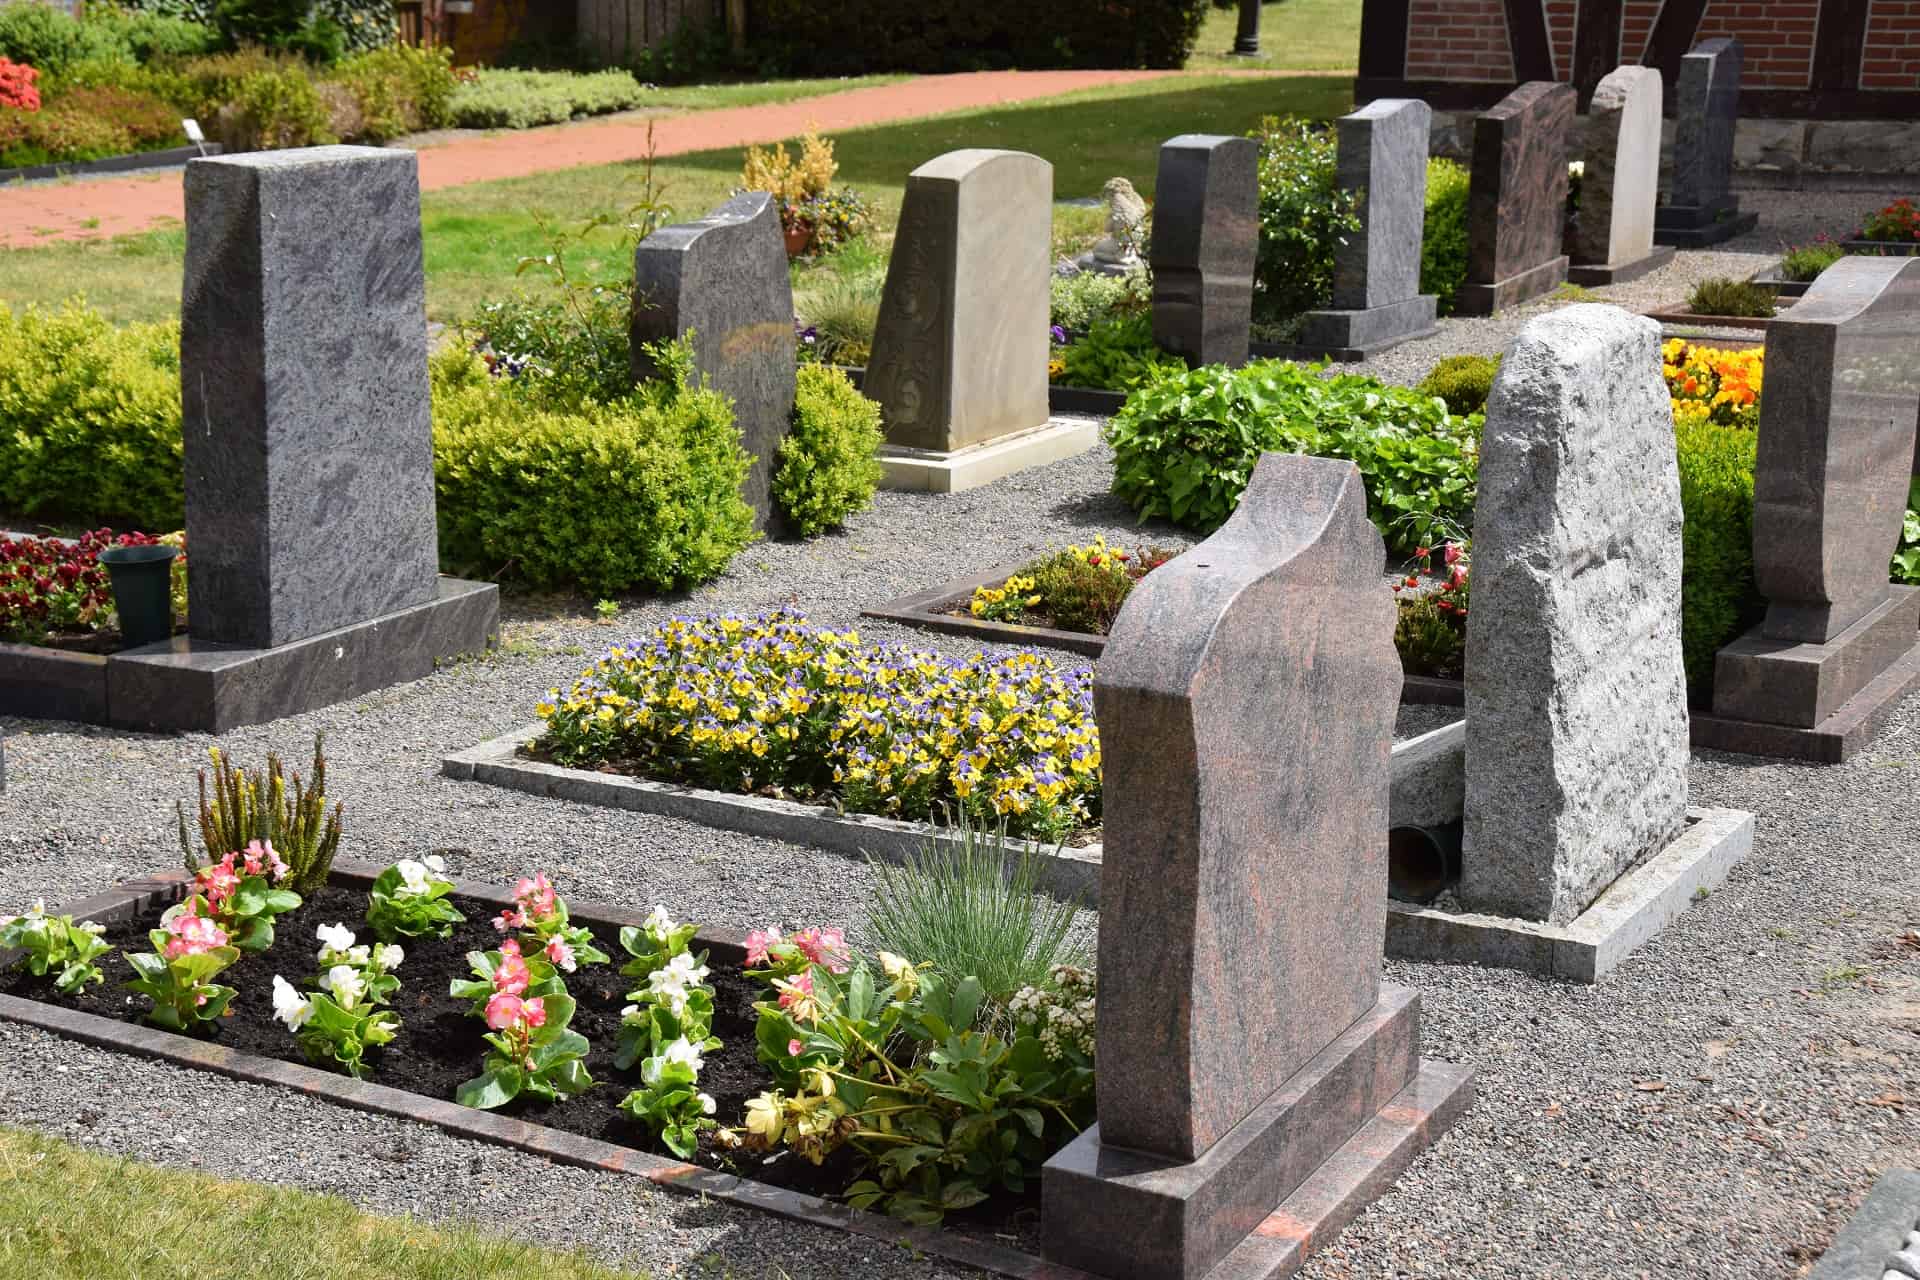 Kako saznati vlasnika grobnog mjesta